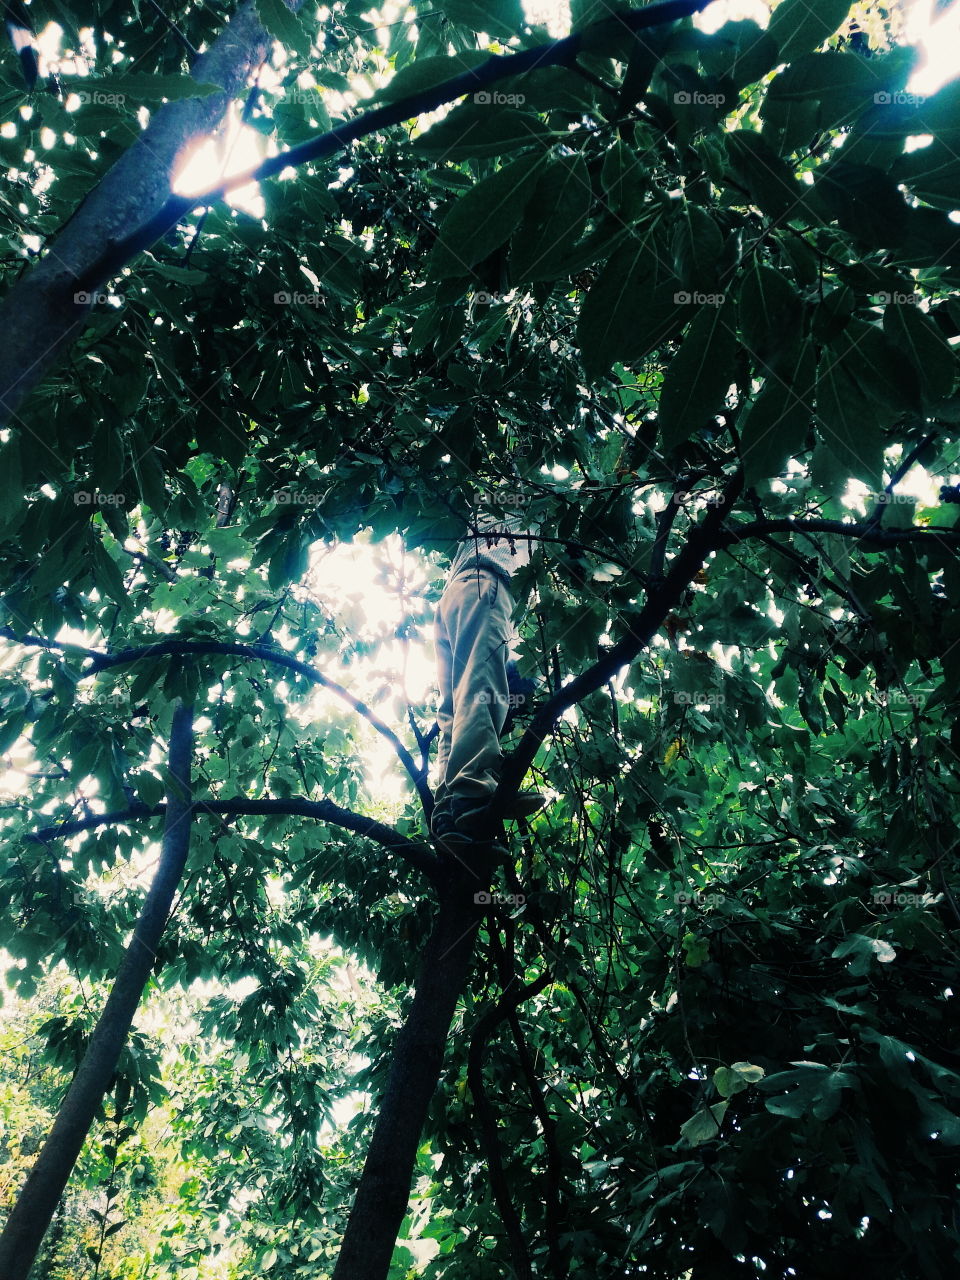 Tree Climb